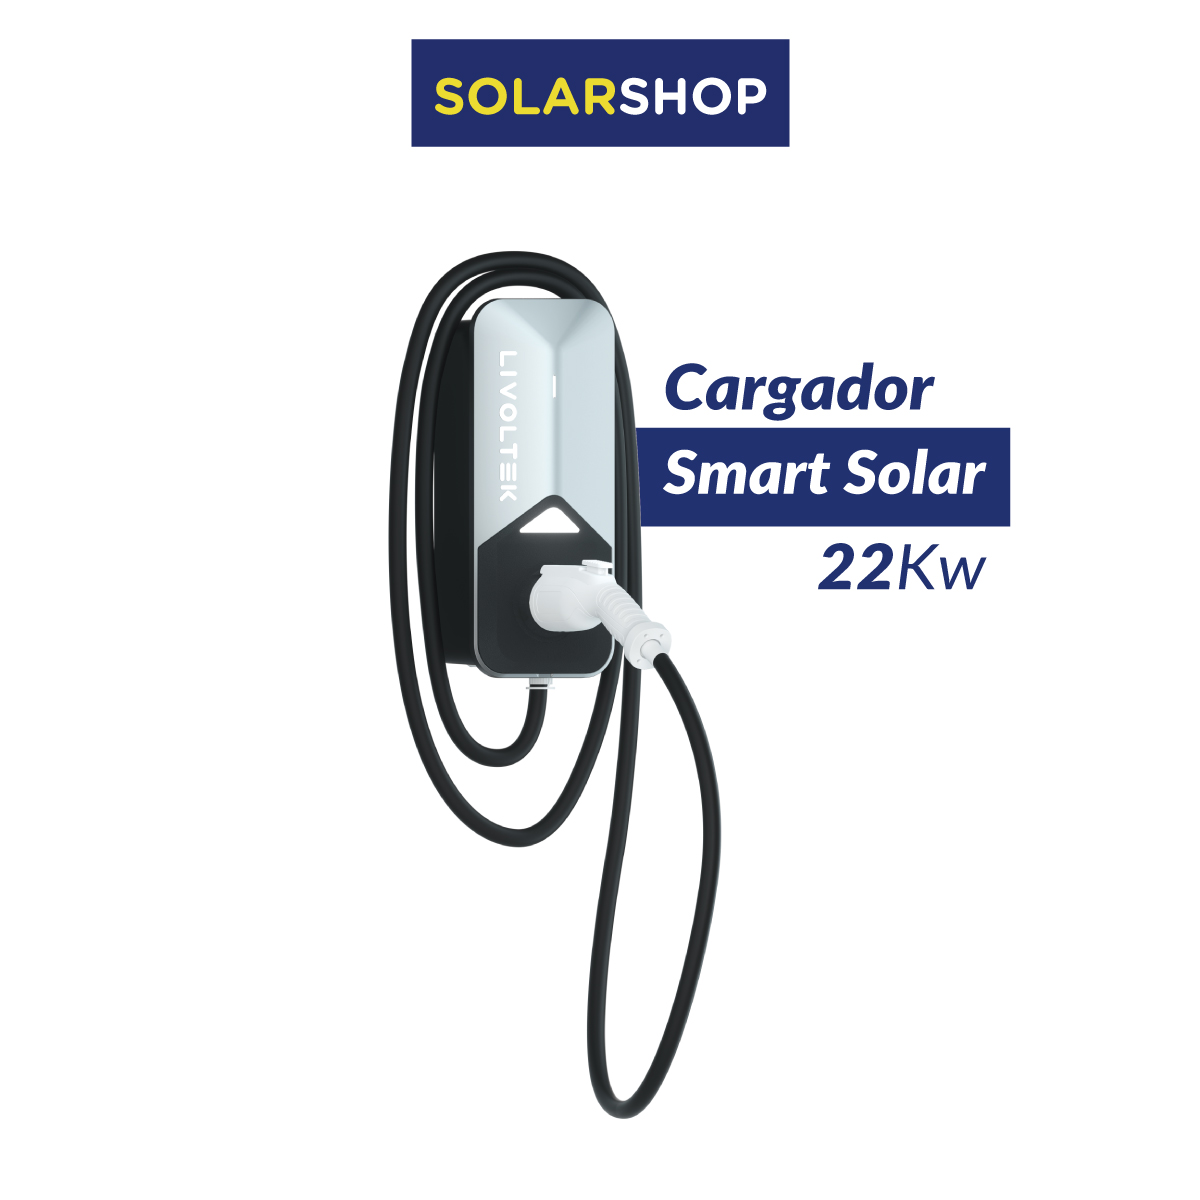 Cargador Smart Solar - 22kW